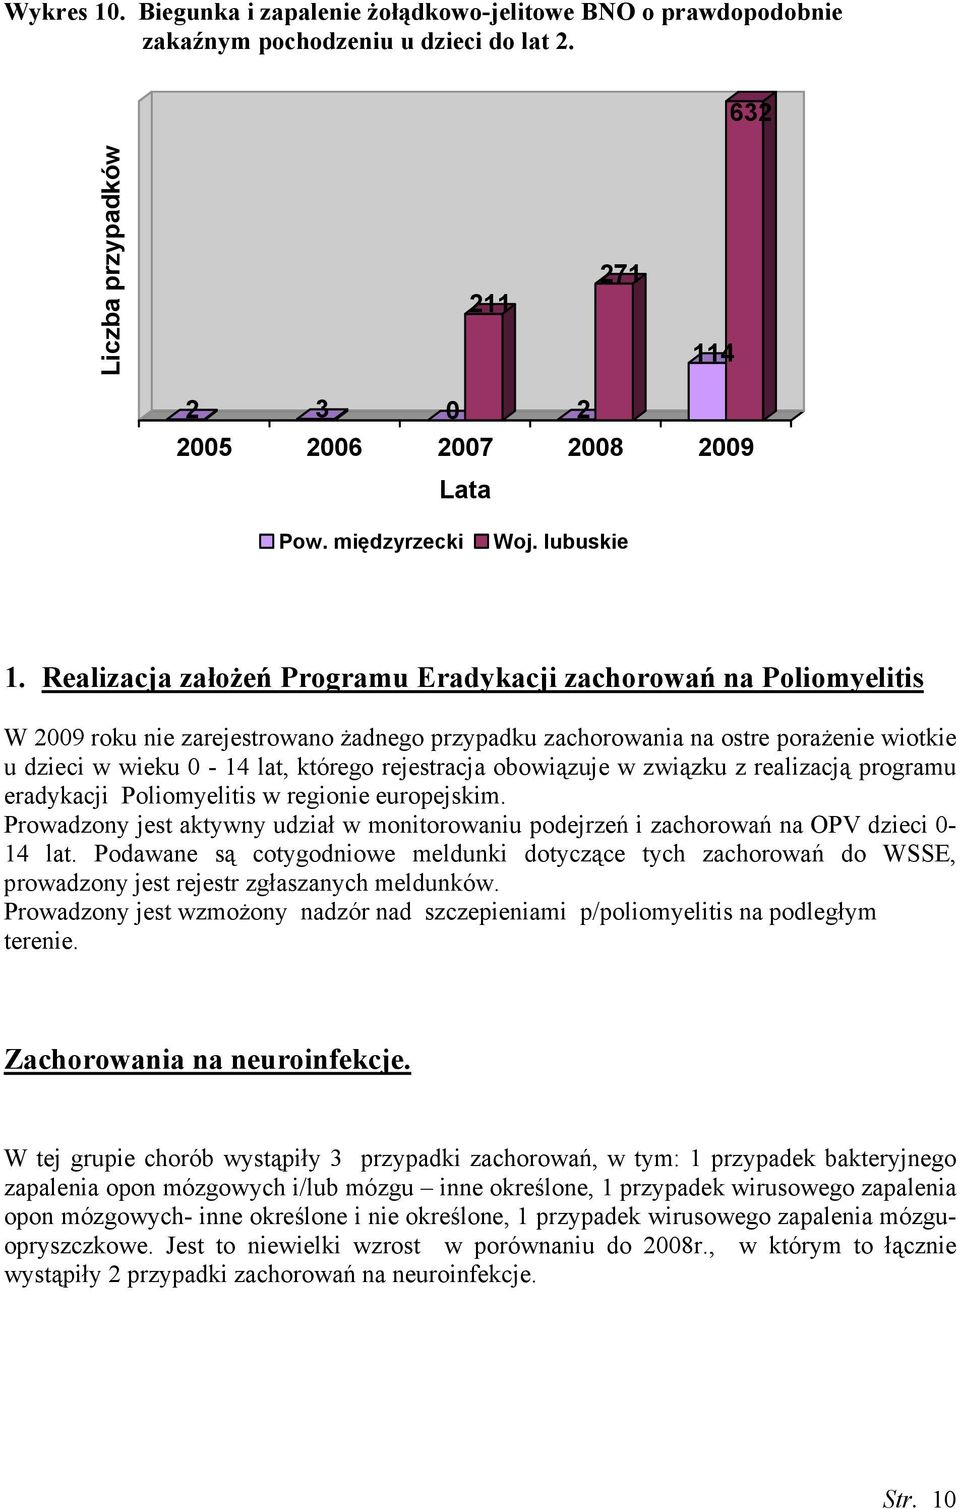 Realizacja załoŝeń Programu Eradykacji zachorowań na Poliomyelitis W 2009 roku nie zarejestrowano Ŝadnego przypadku zachorowania na ostre poraŝenie wiotkie u dzieci w wieku 0-14 lat, którego